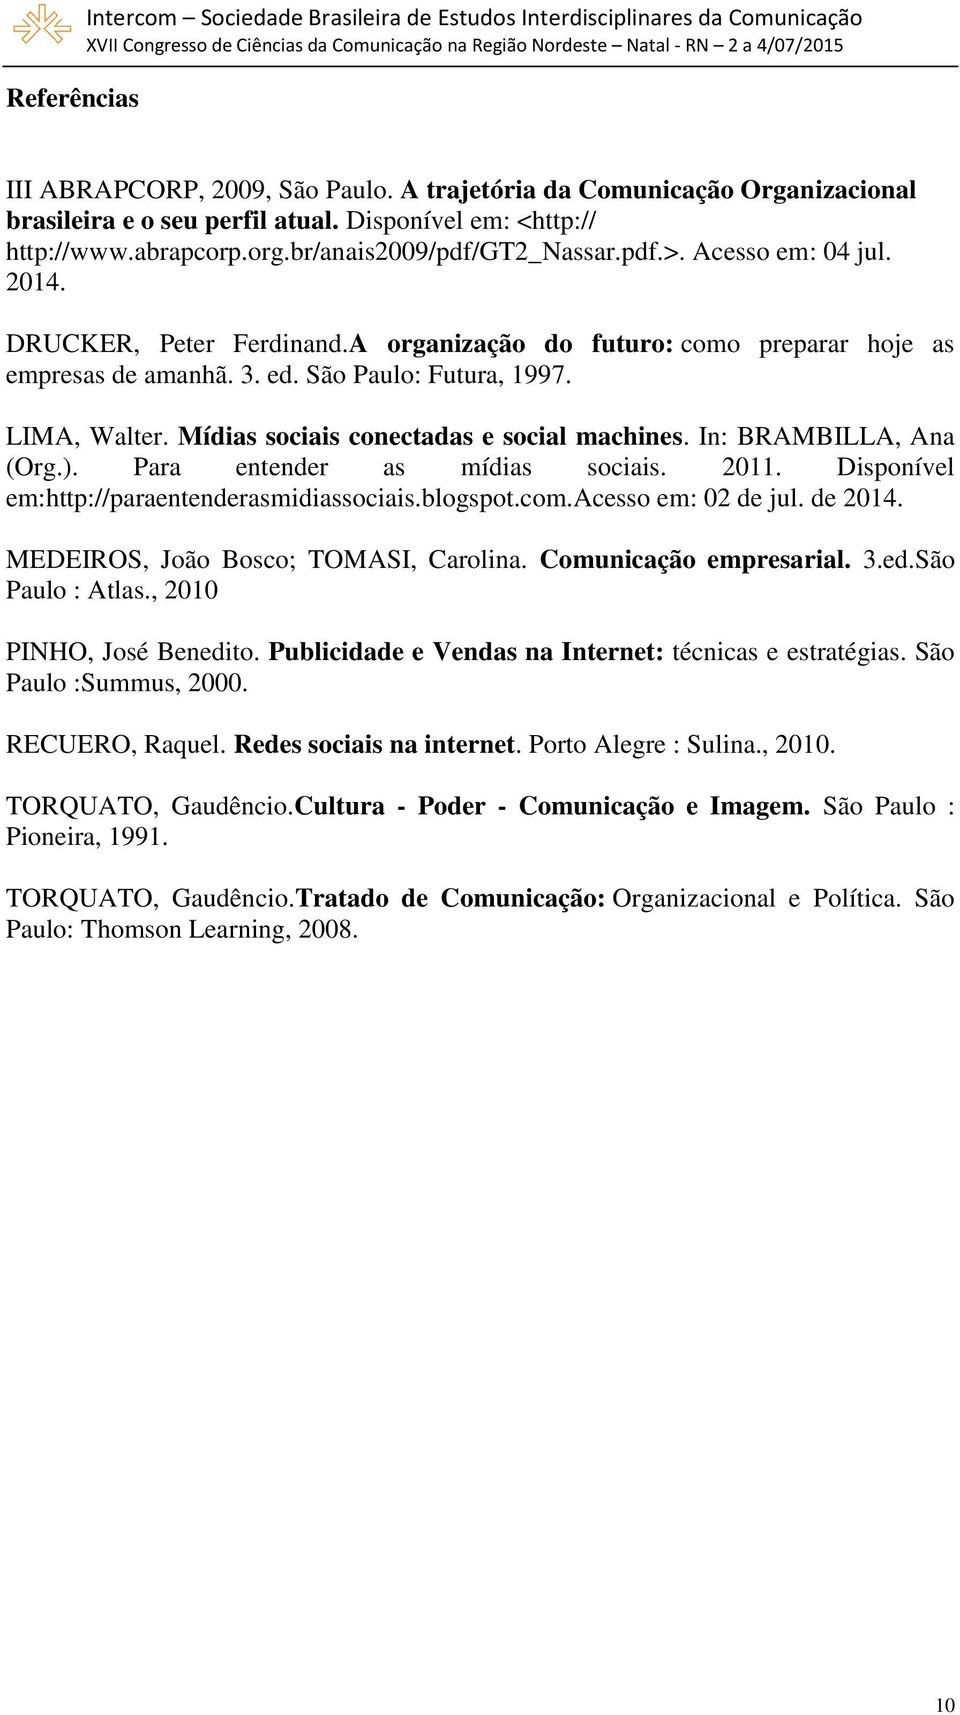 3. ed. São Paulo: Futura, 1997. LIMA, Walter. Mídias sociais conectadas e social machines. In: BRAMBILLA, Ana (Org.). Para entender as mídias sociais. 2011.